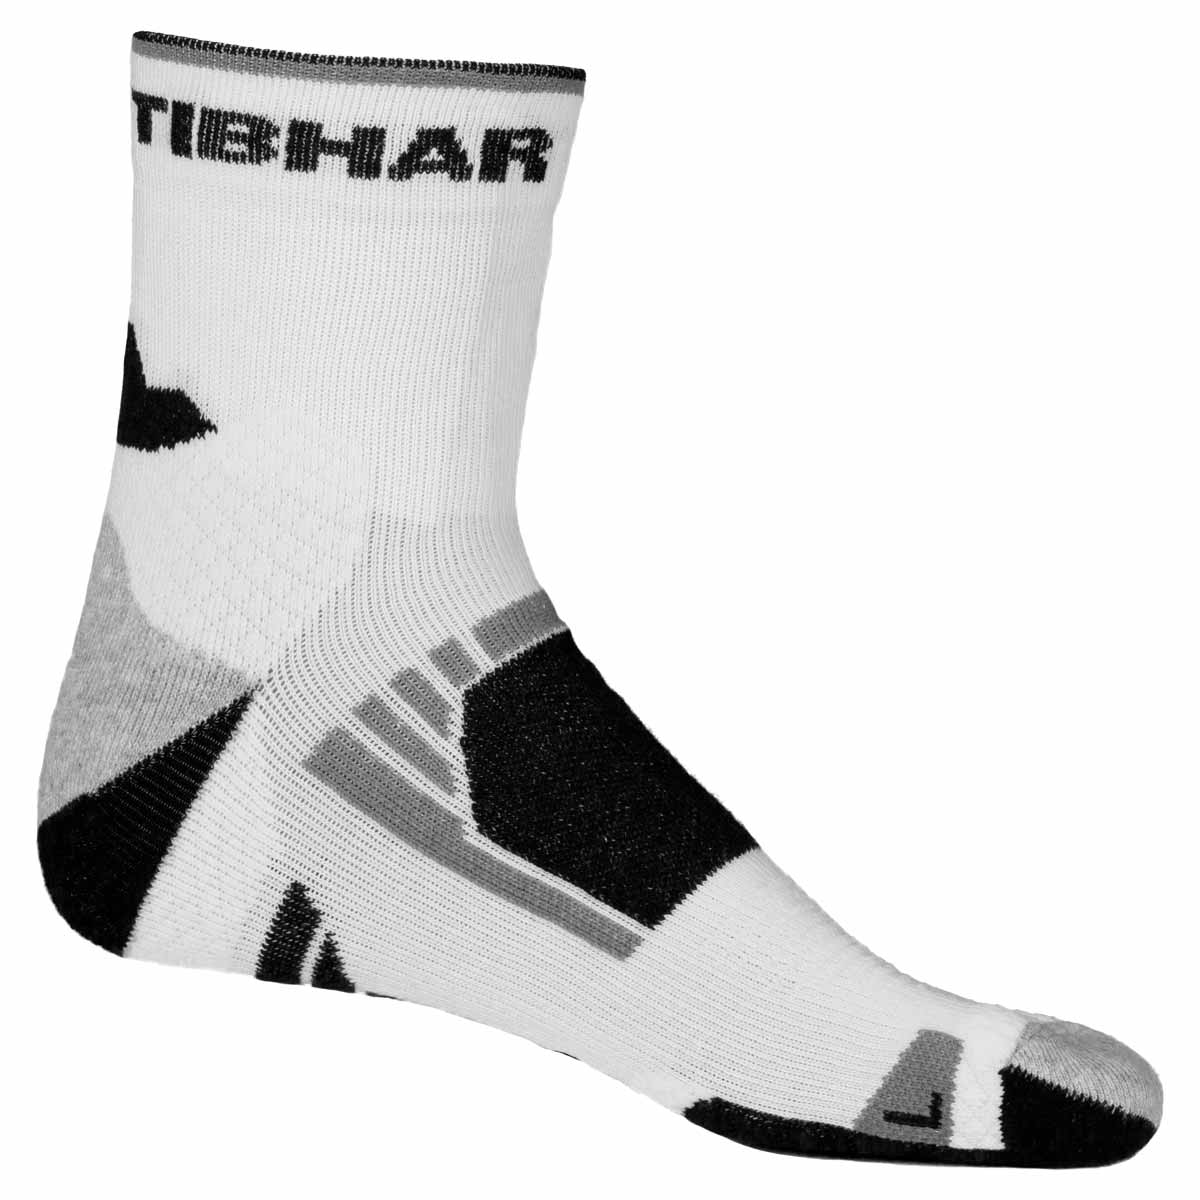 TIBHAR Socke Tech weiß/schwarz 36-38